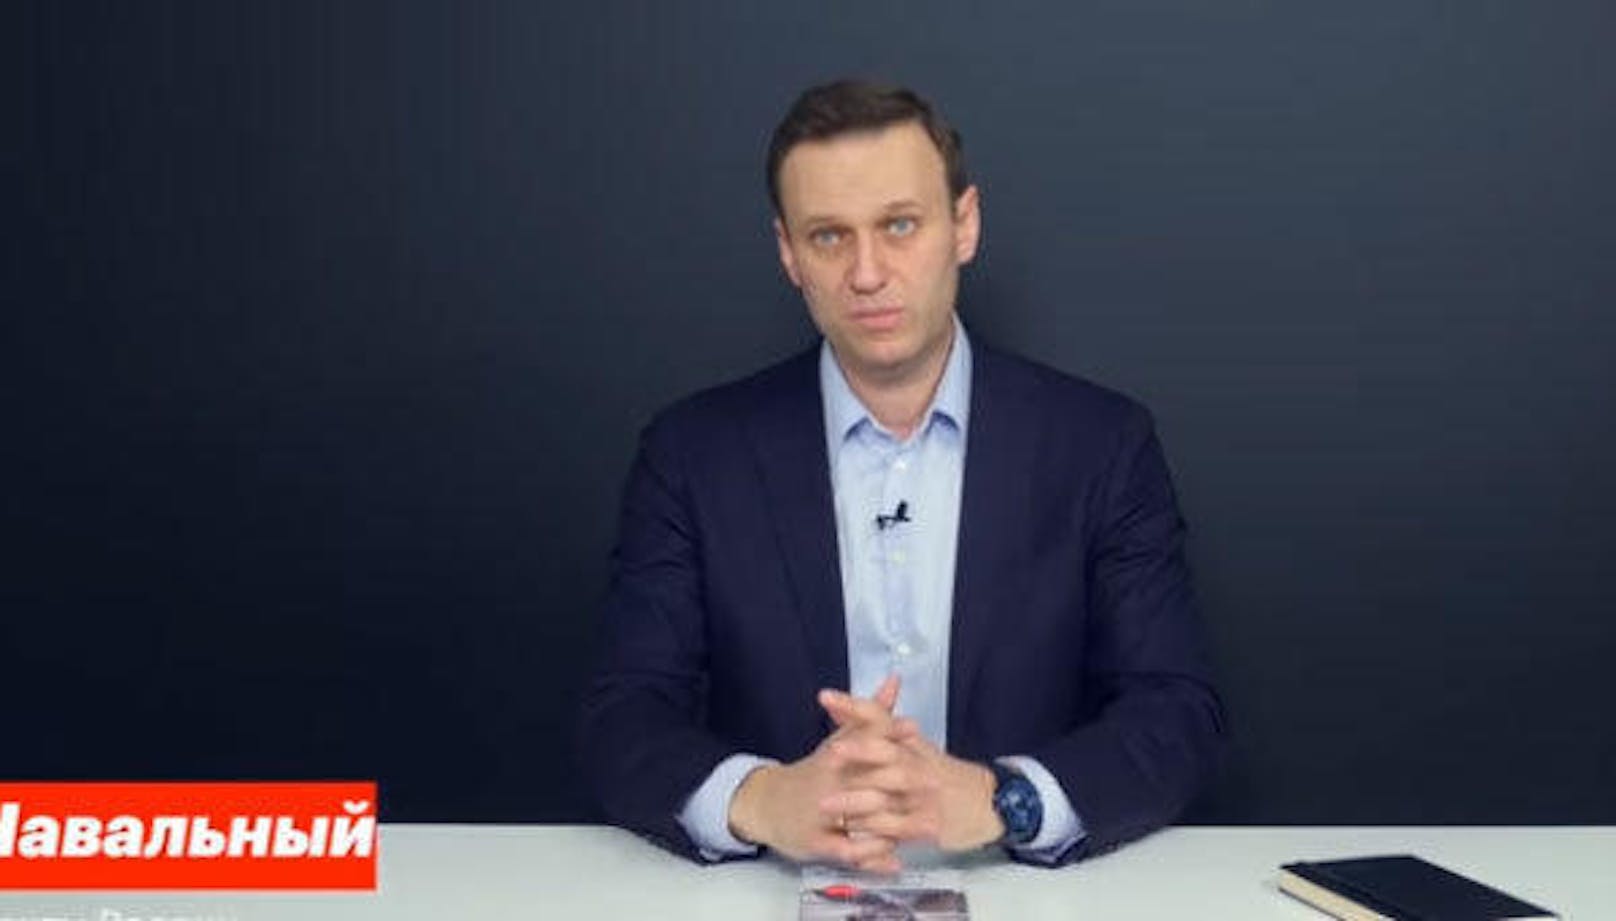 Das Video war ein gefundenes Fressen für Putin-Kritiker Alexei Nawalny. Er warf dem Vizepremier vor, Schmiergelder von Oligarch Deripaska angenommen zu haben. Die Escortgirls auf der Jacht, so Nawalny, seien quasi das "Dessert" gewesen, um den Deal zu besiegeln.